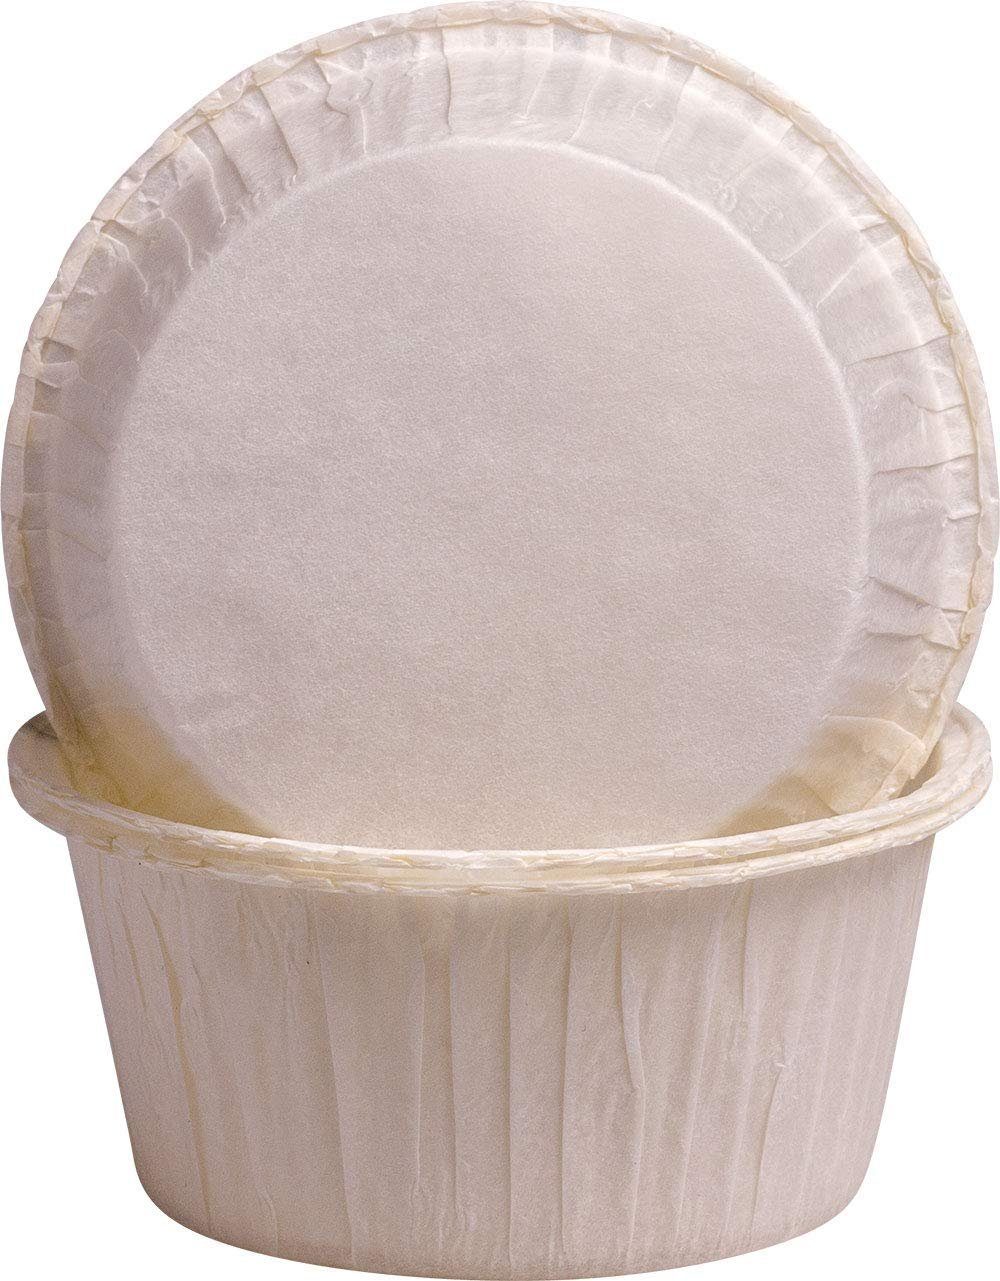 Backförmchen von Made mehr 5032800250, und - Muffins Germany 250 zum in backen weiß, Cupcakes, Muffinform in Demmler